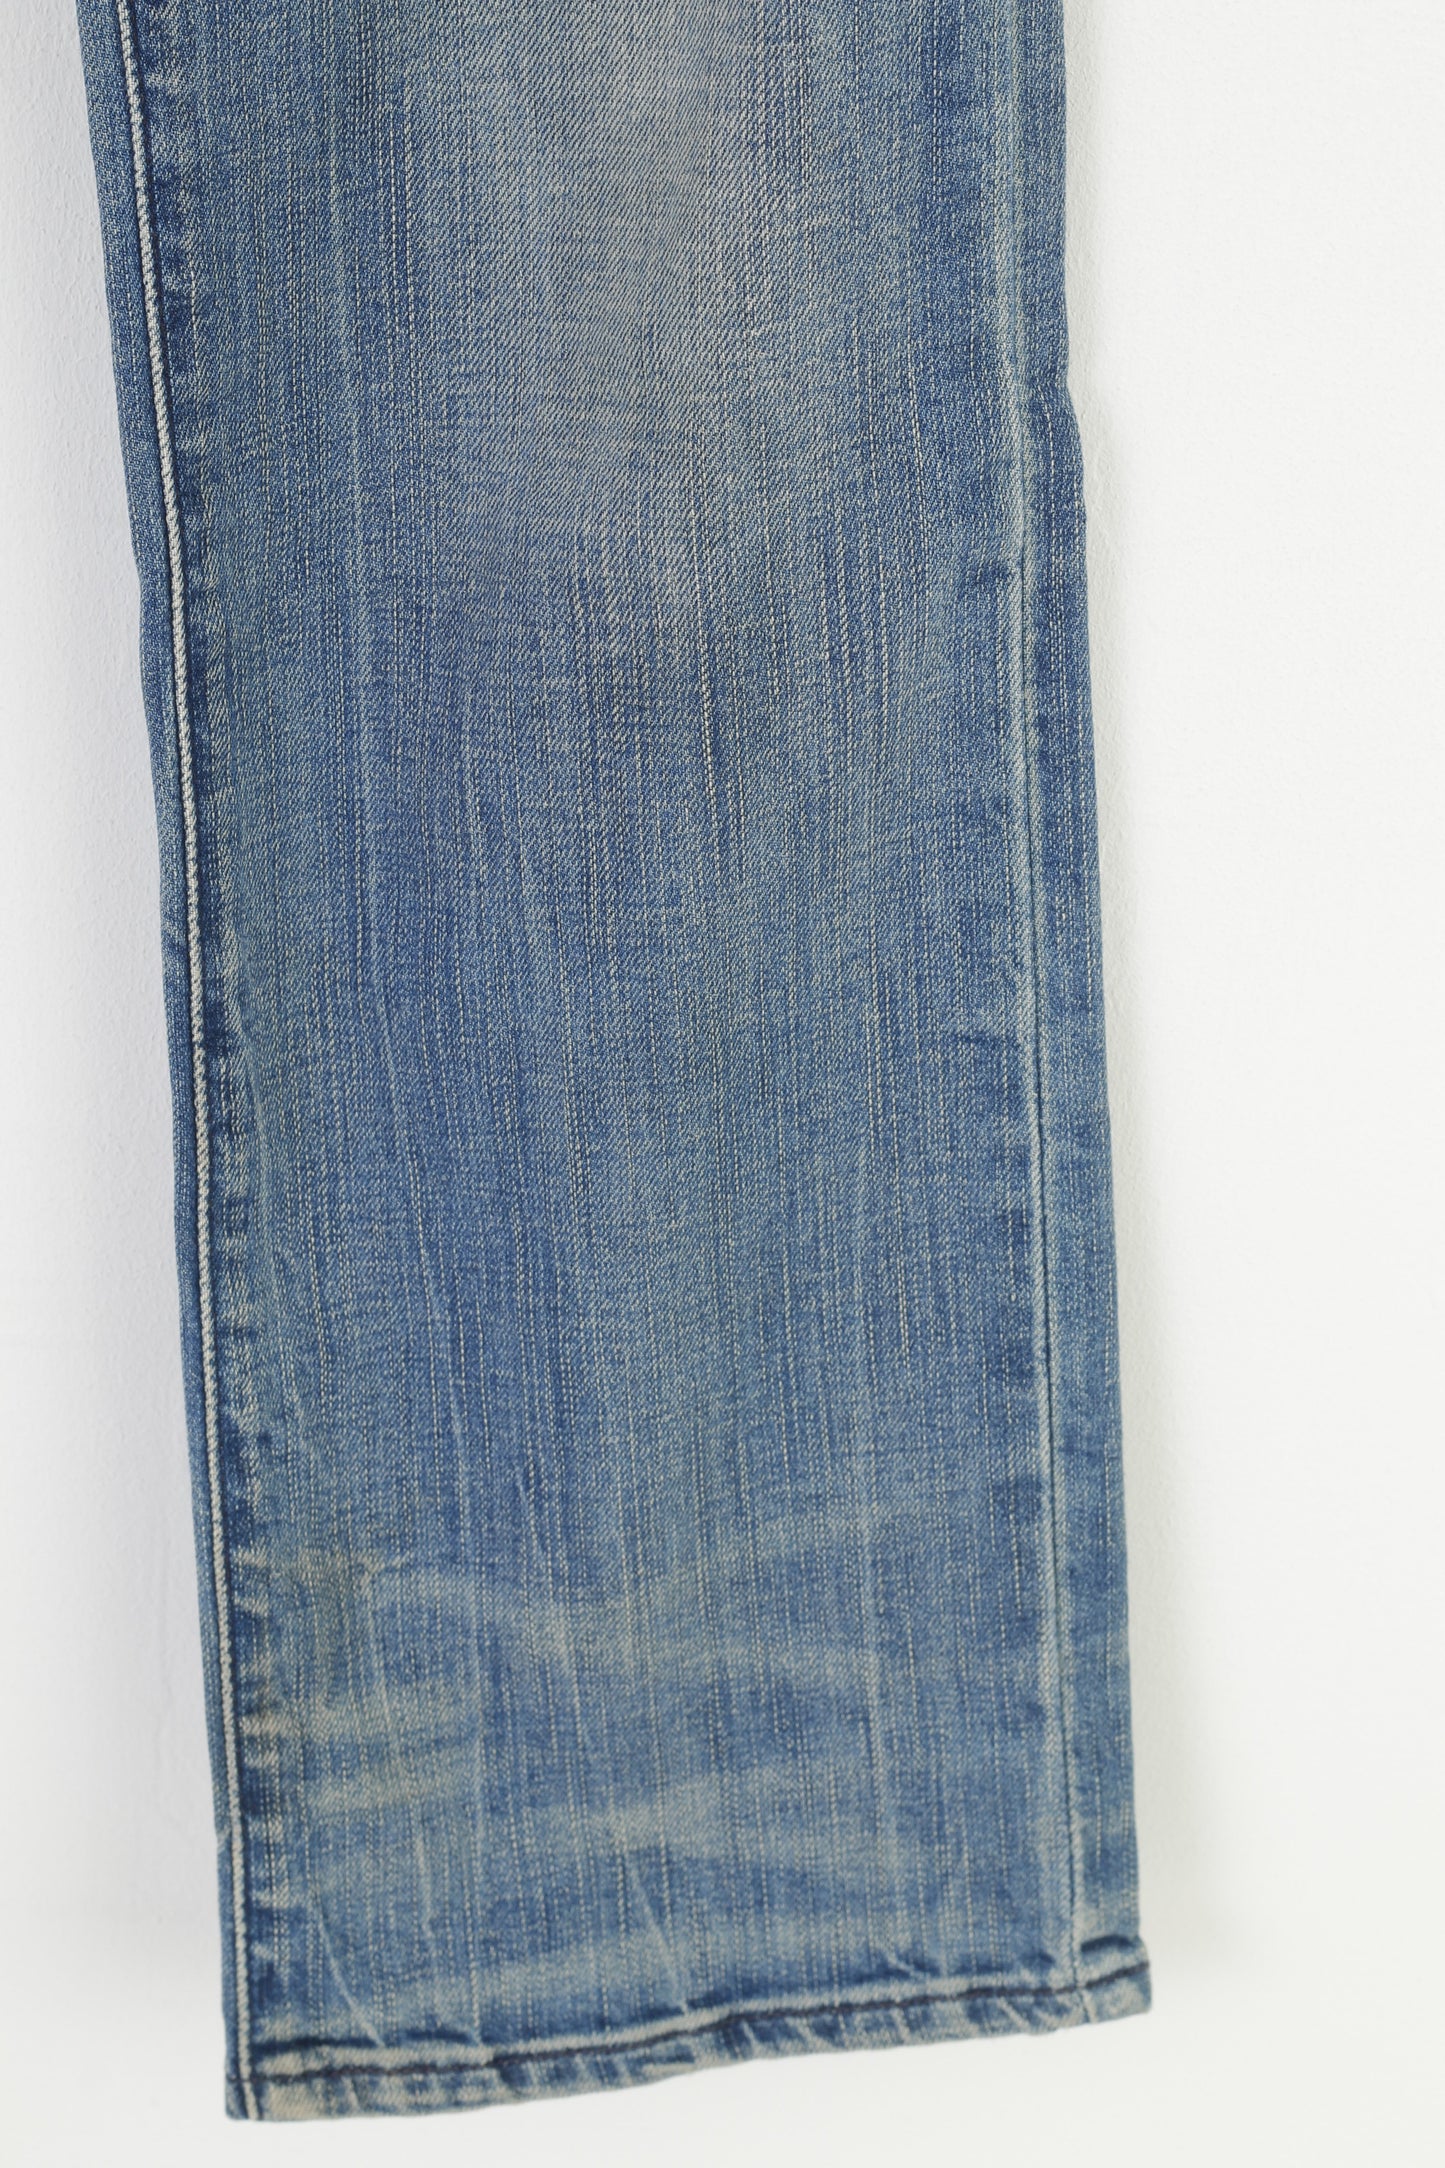 Levis Women 27 Trousers  Blue Cotton Denim Jeans Straight Leg Pants